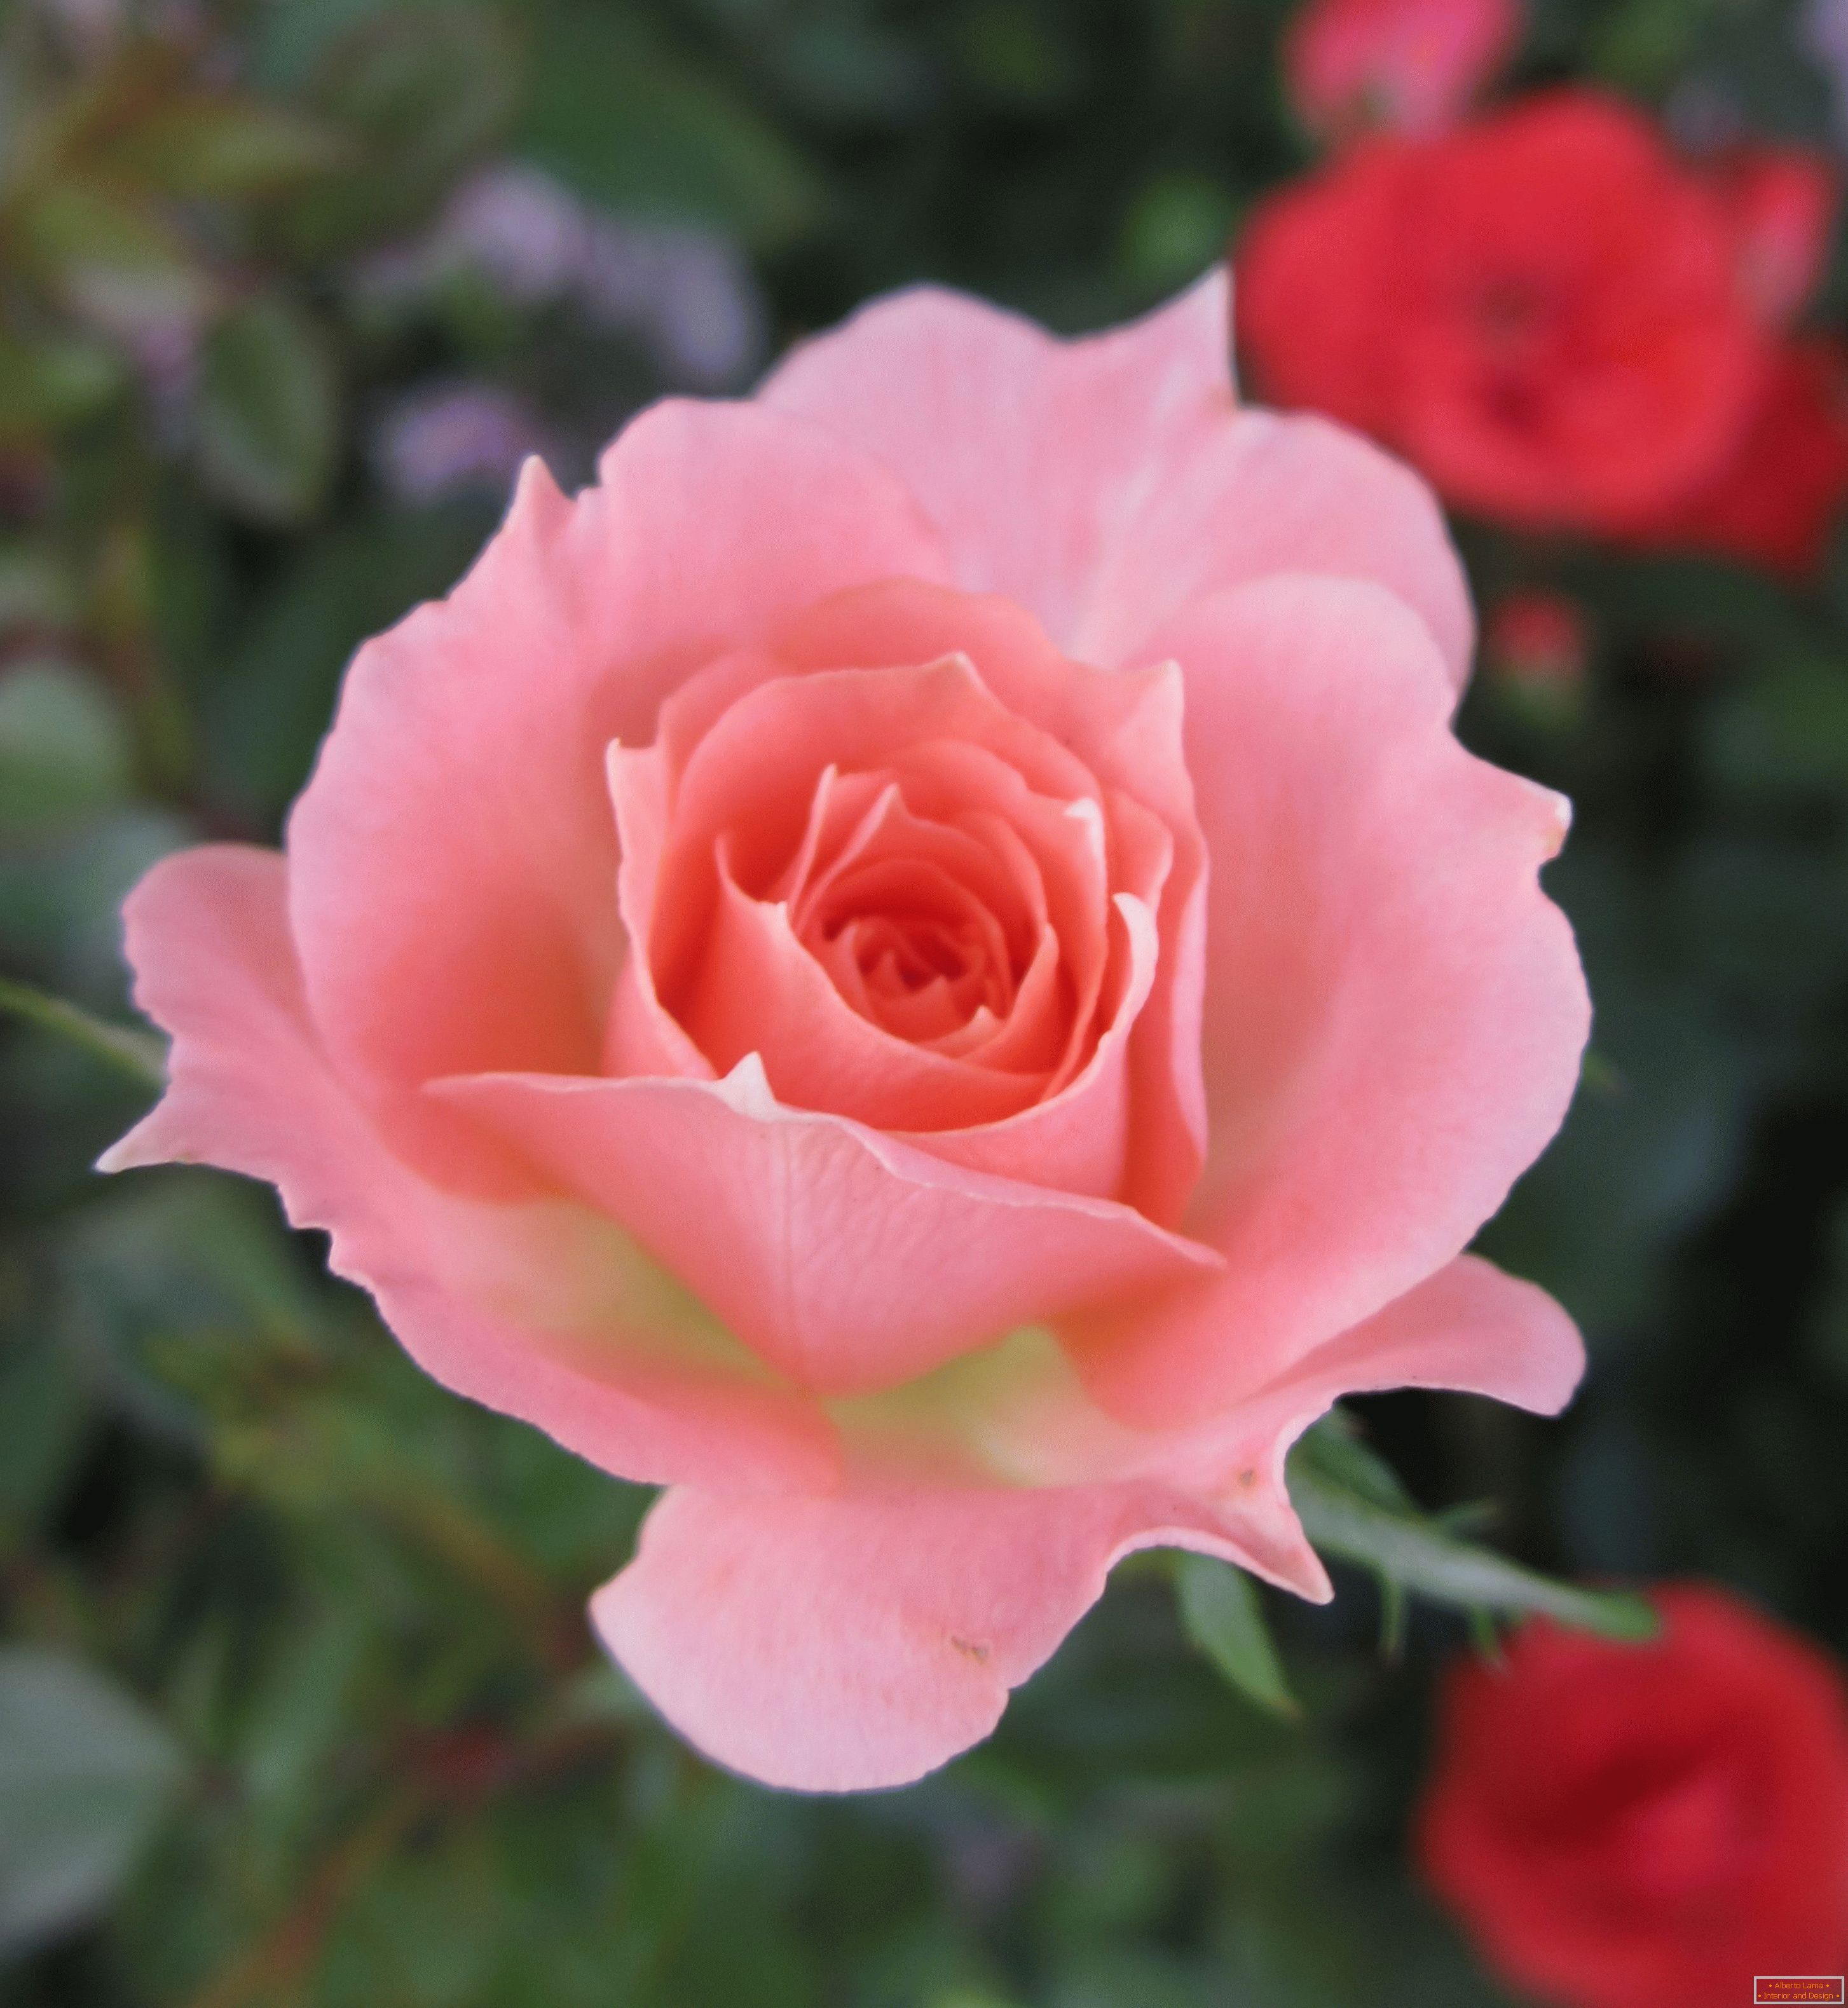 Rose d'ombre rose dans un environnement de fleurs rouges